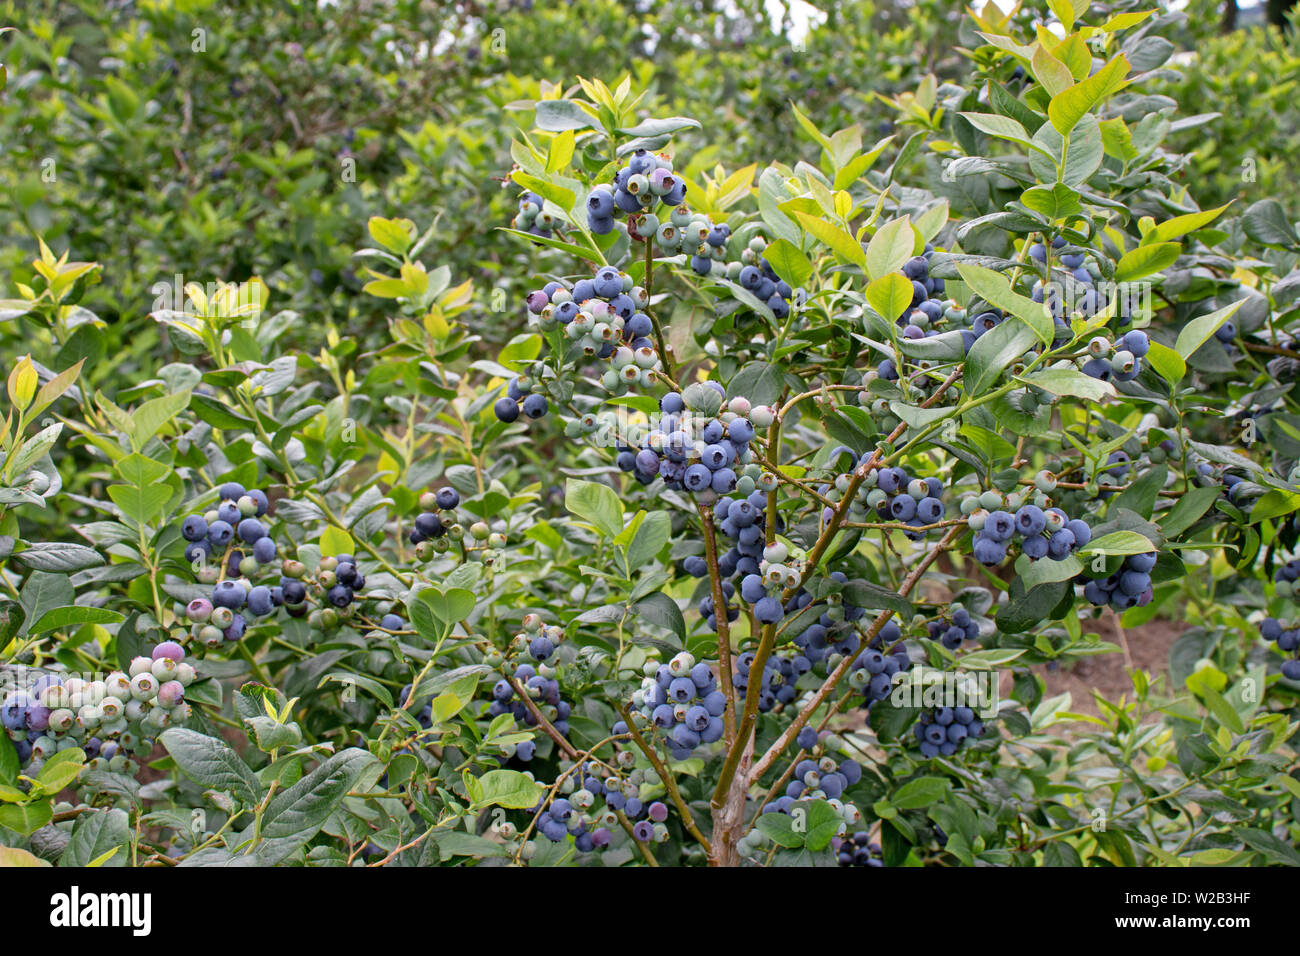 Reife Früchte der Heidelbeere auf der Plantage. Fülle der Beeren am Strauch. Ertragreiche Northern highbush Vielfalt. Stockfoto